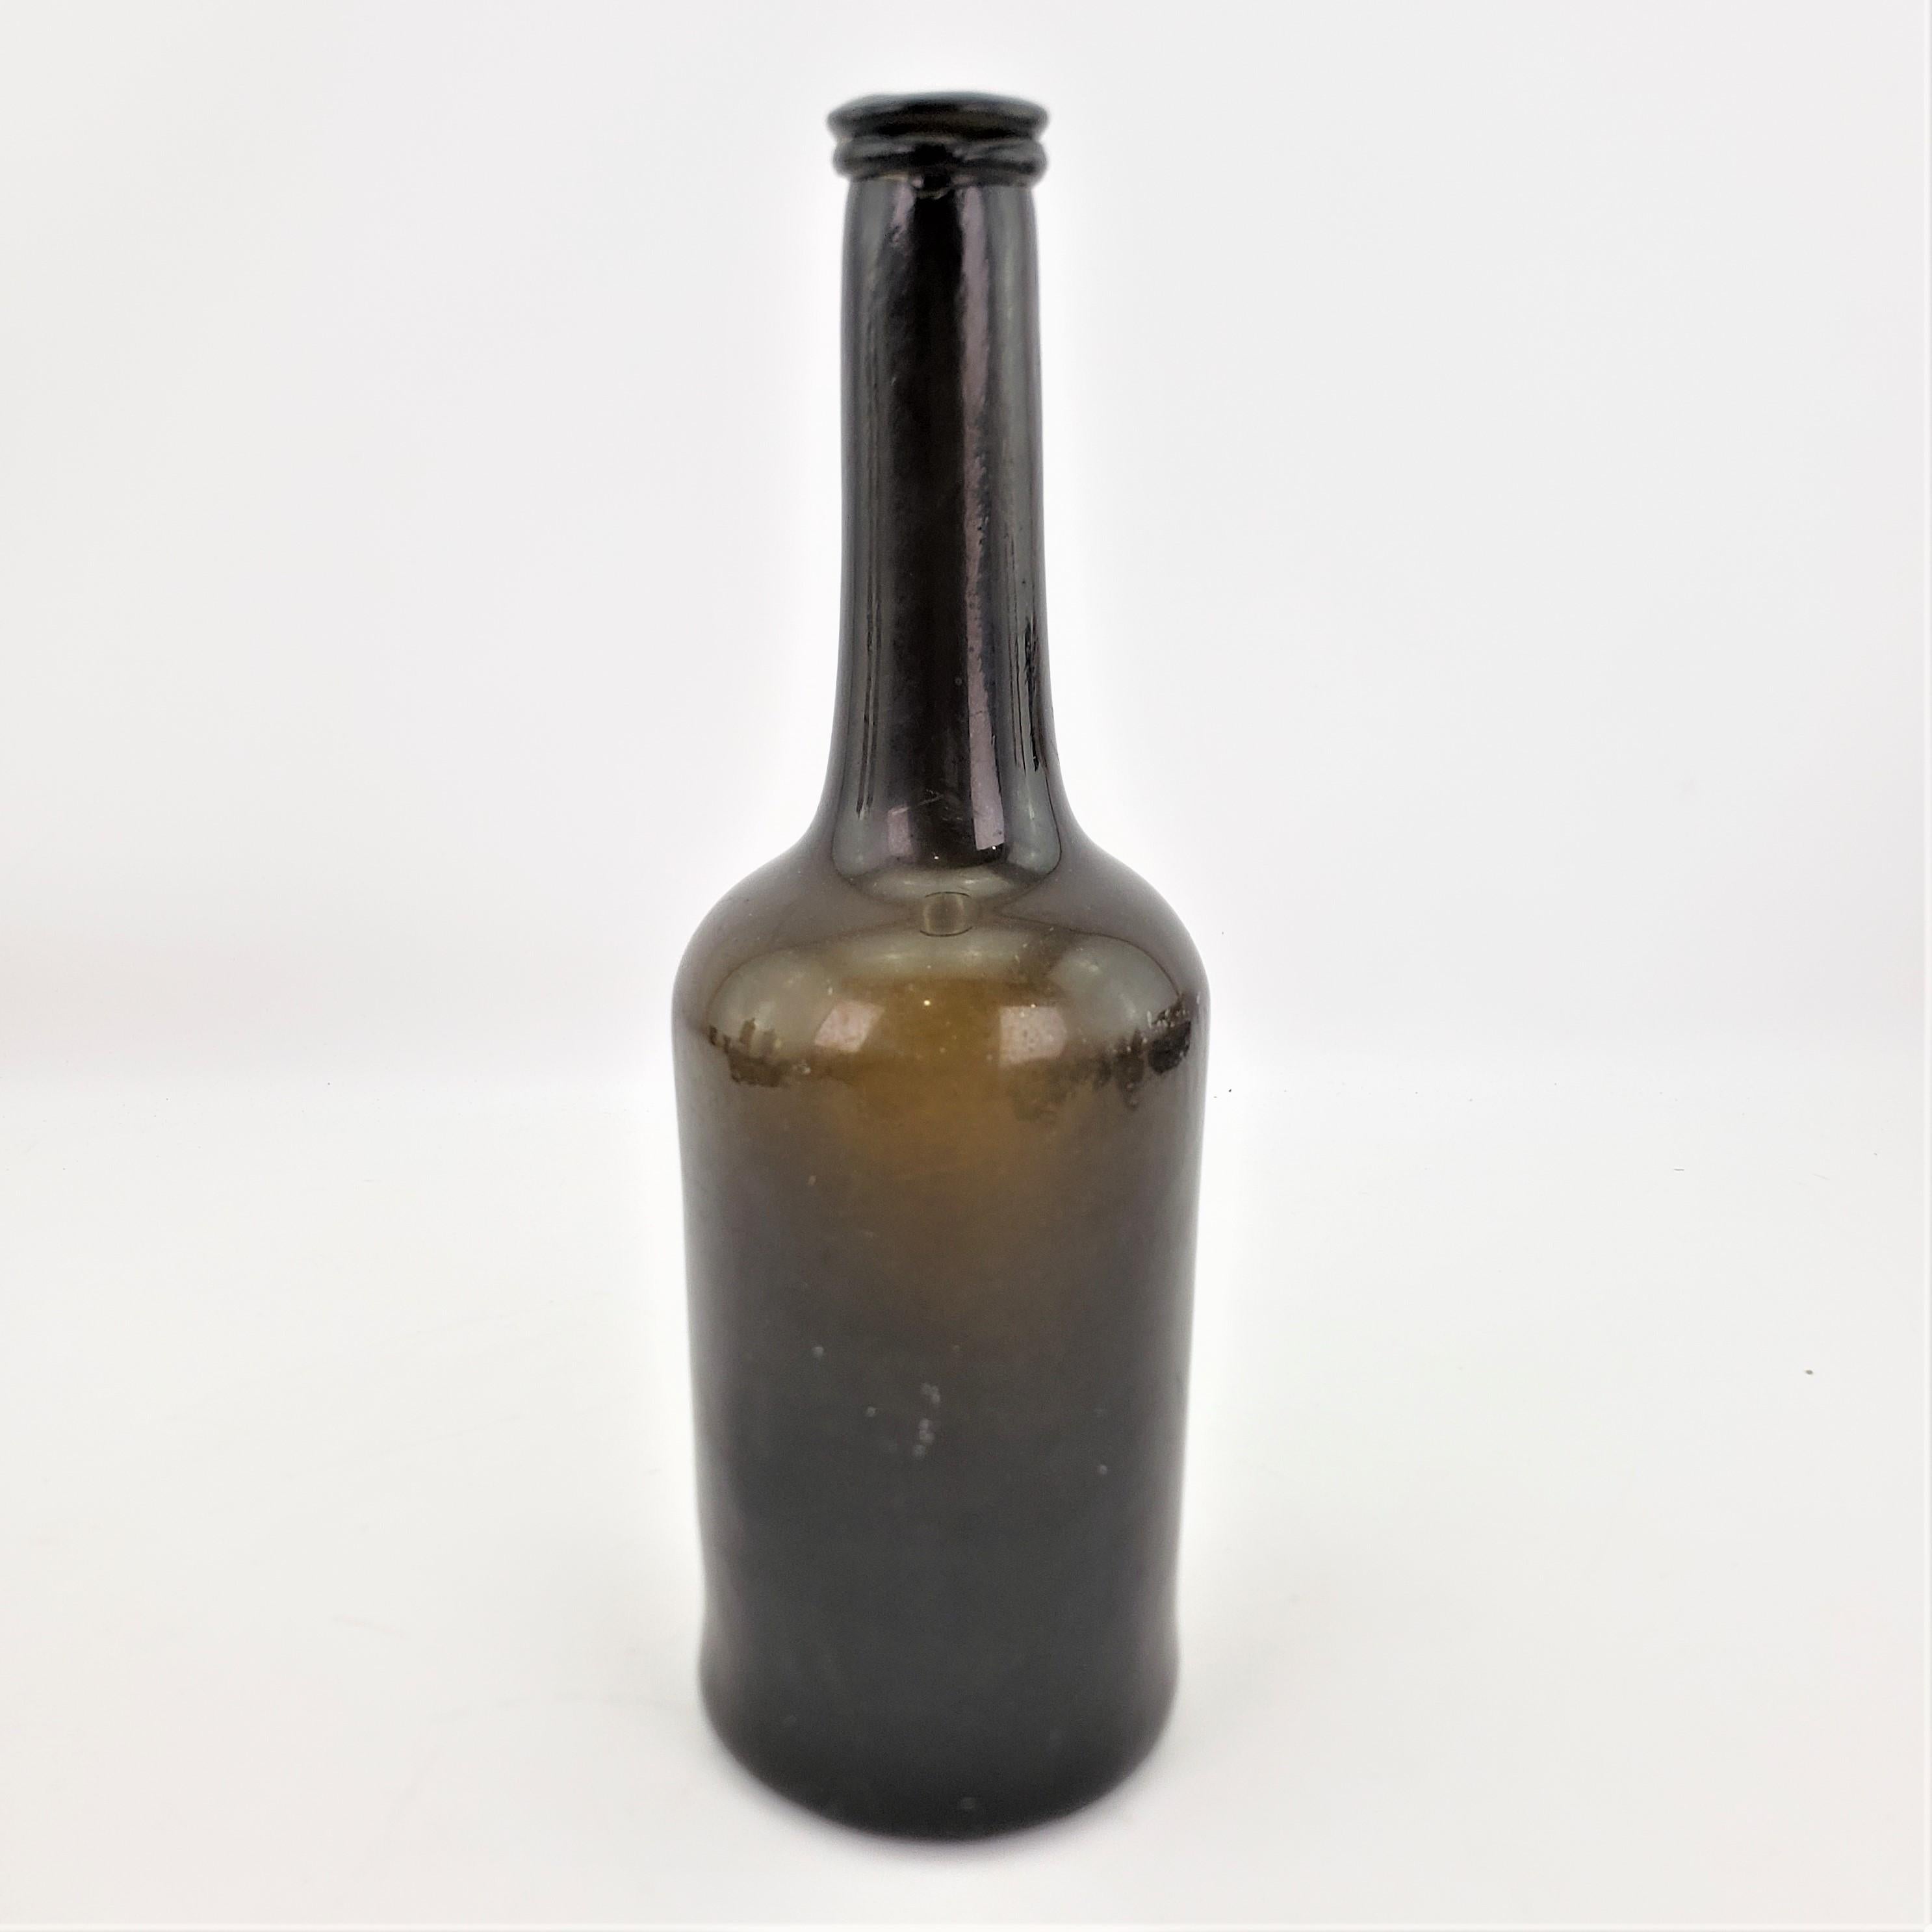 1700s wine bottle